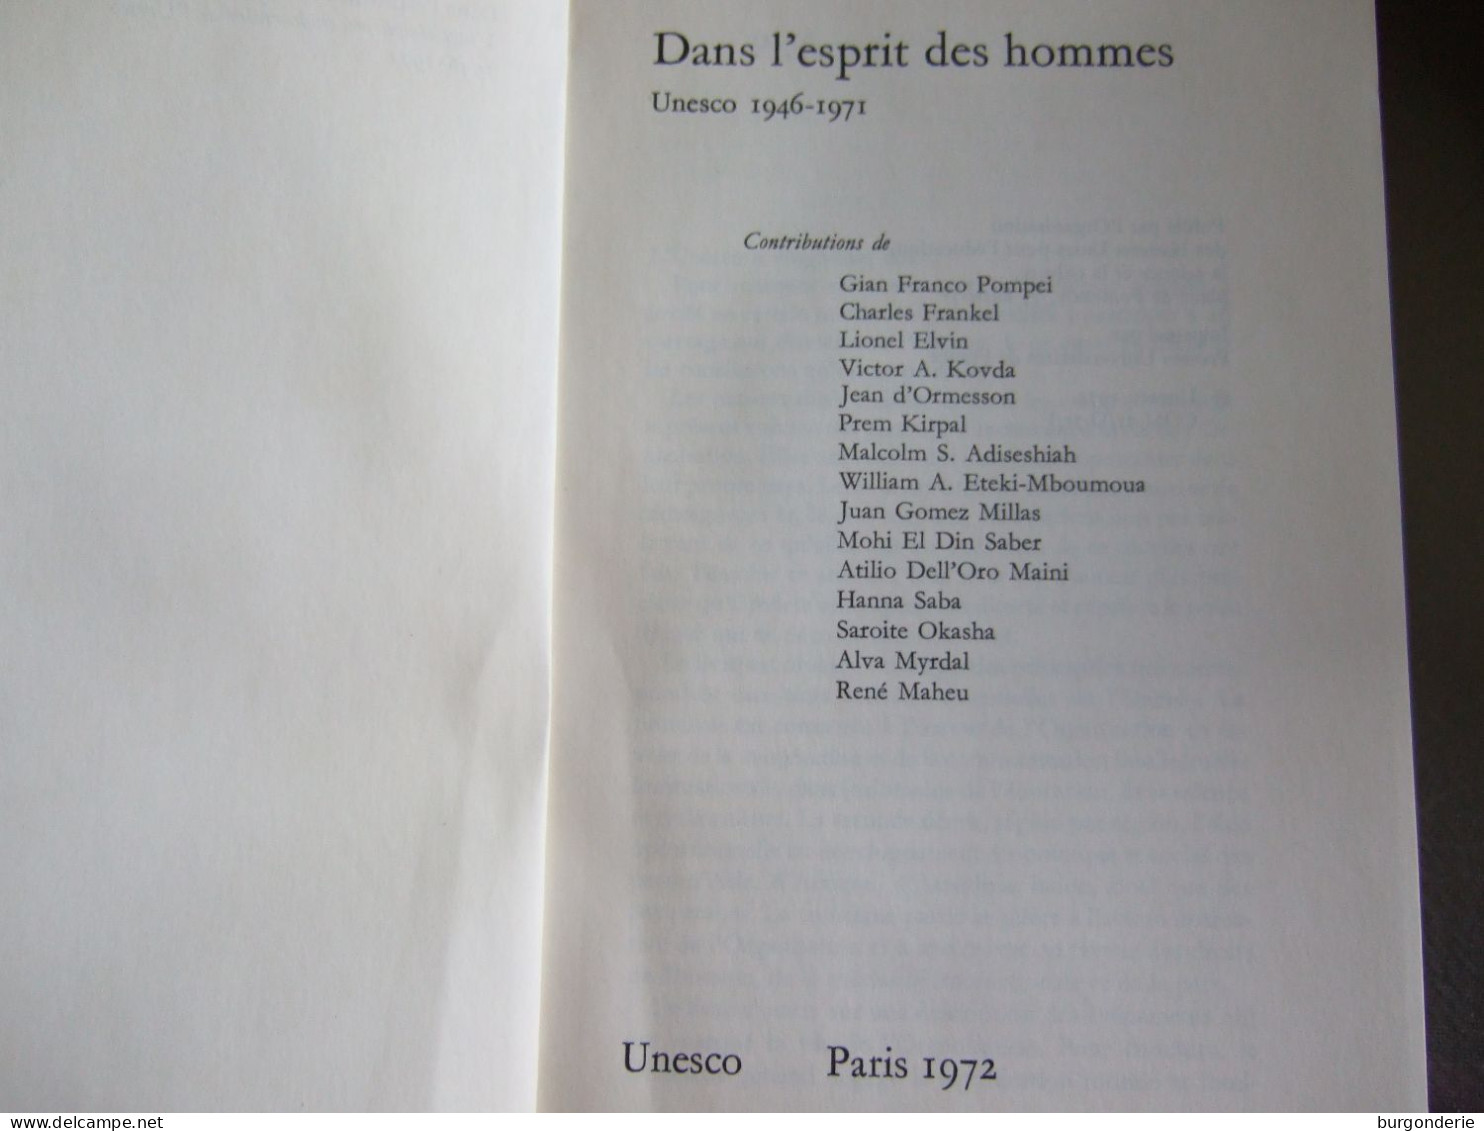 DANS L'ESPRIT DES HOMMES / UNESCO 1946-1971 / PUBLIE PAR L'ONU EN 1972/ RARE OUVRAGE.... - Soziologie